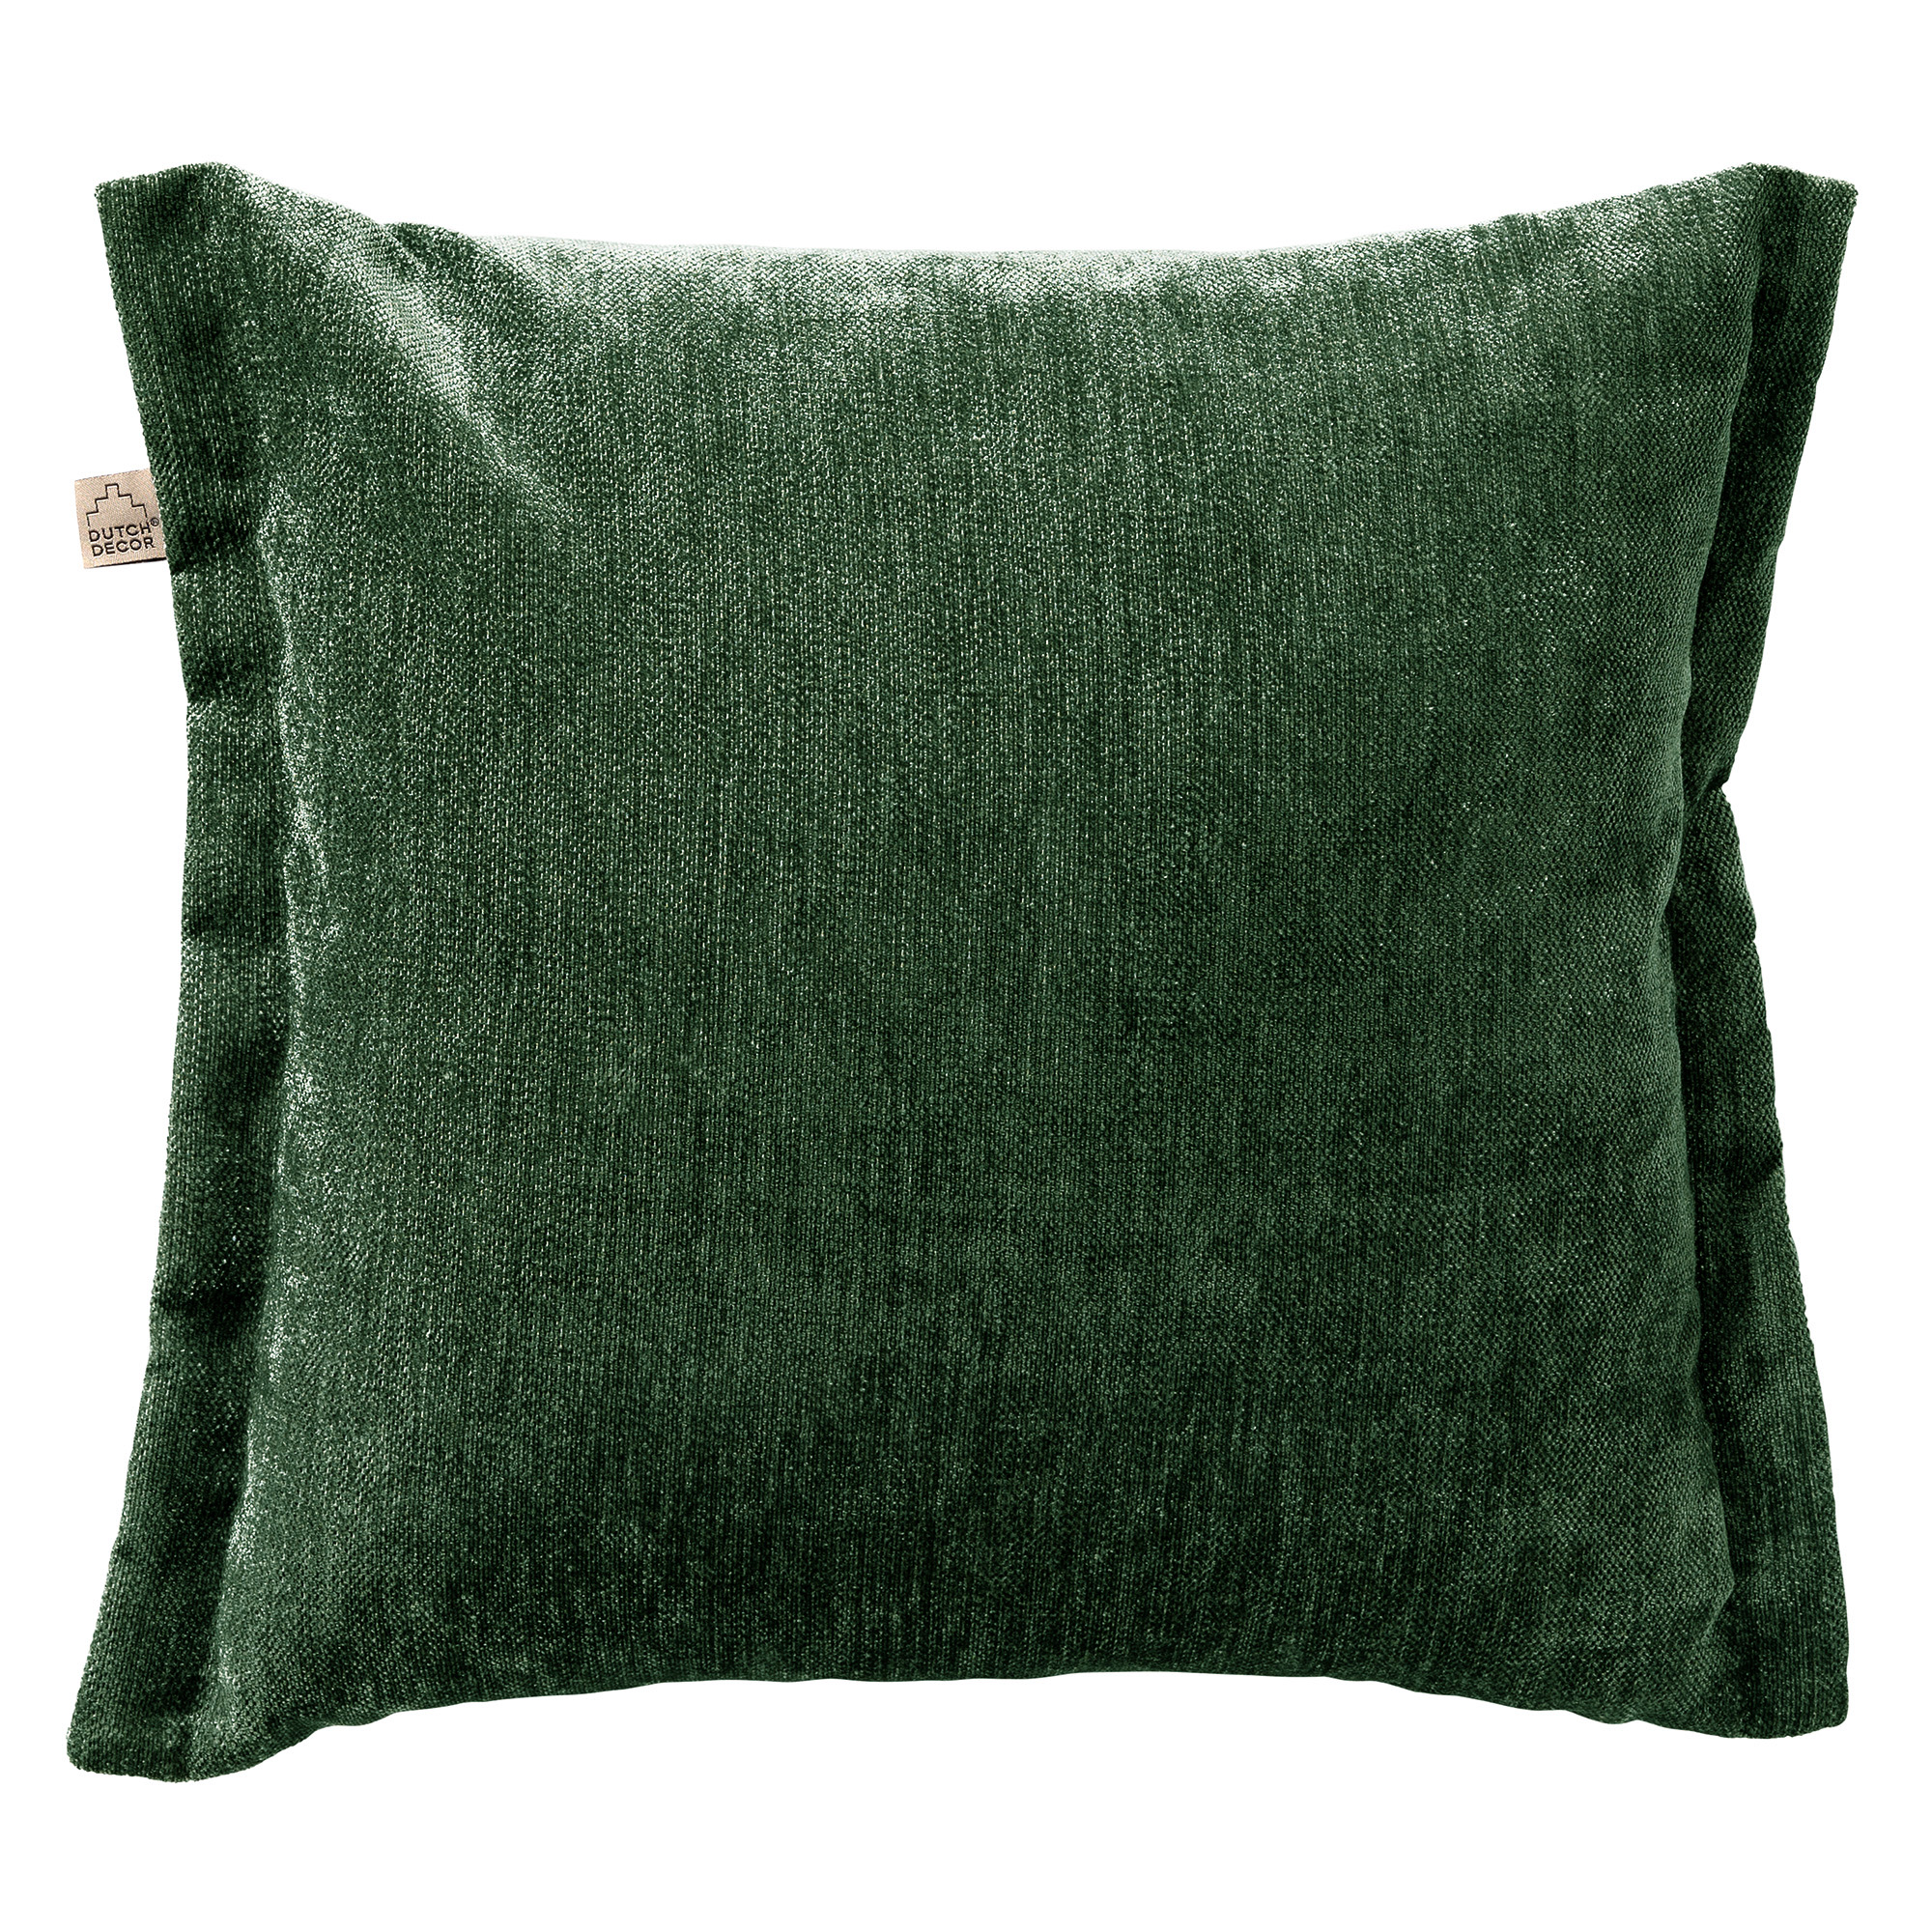 LEWIS - Cushion 45x45 cm - Mountain View - green